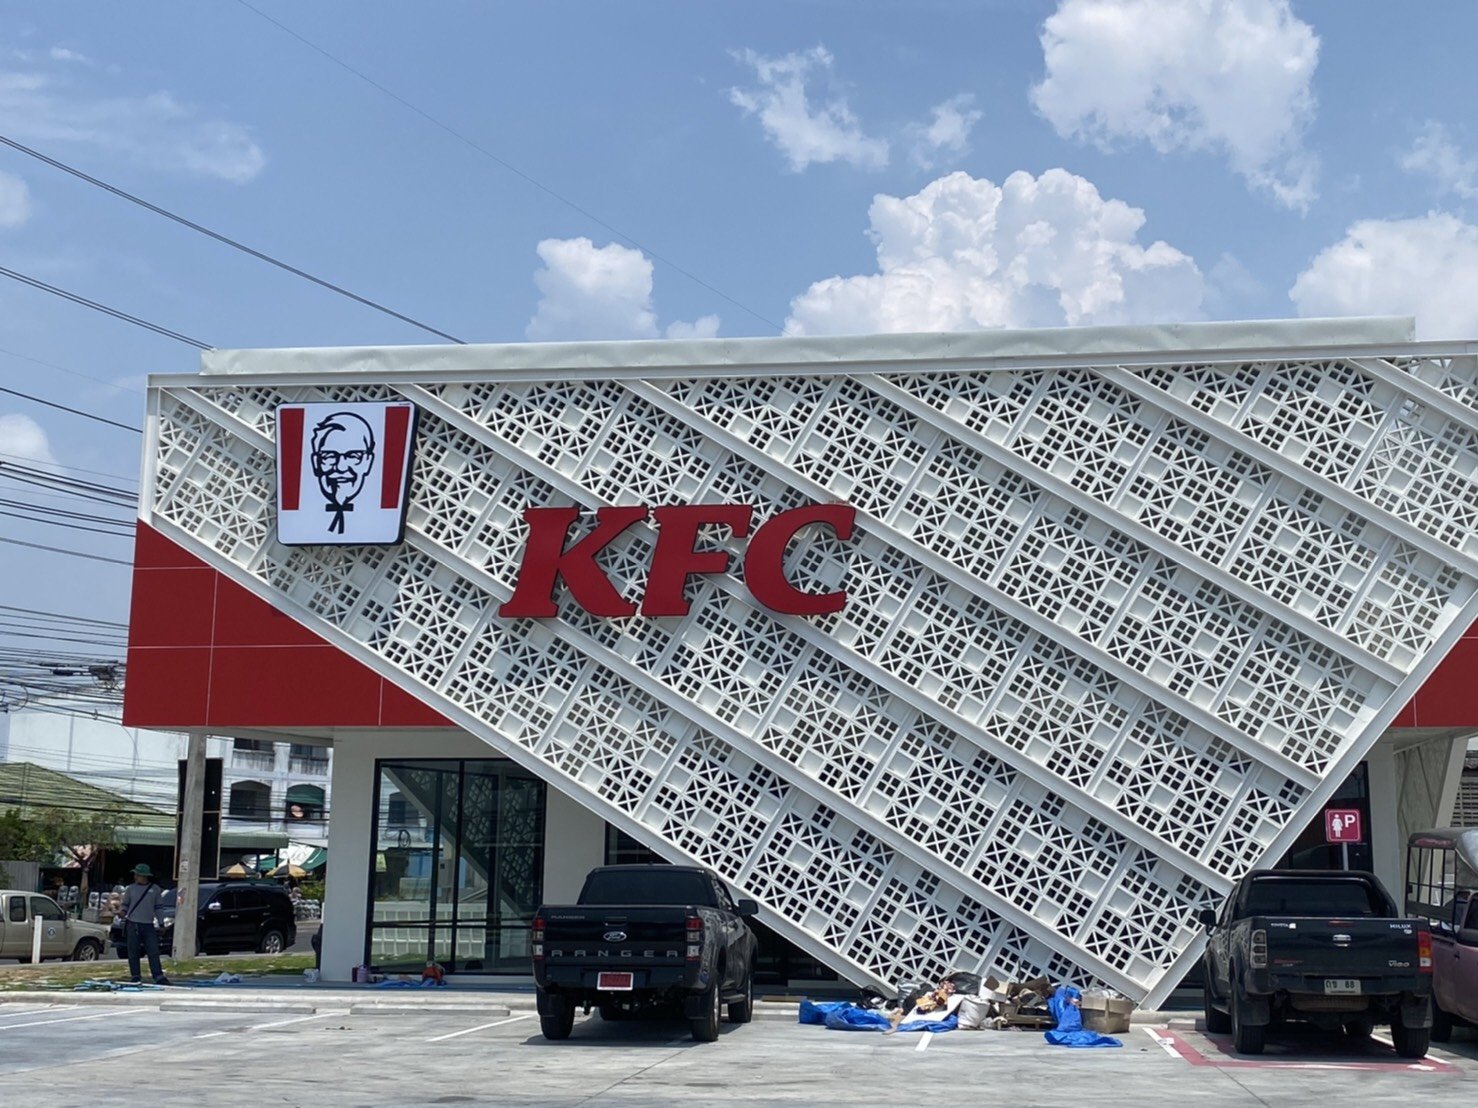 ตัวอย่างการนำบล็อกผนังช่องลม สมาร์ทบล็อค มาตกแต่งเป็นผนังฟาซาด (Facade) ให้กับร้านฟาสต์ฟู้ดชื่อดังอย่างร้าน KFC